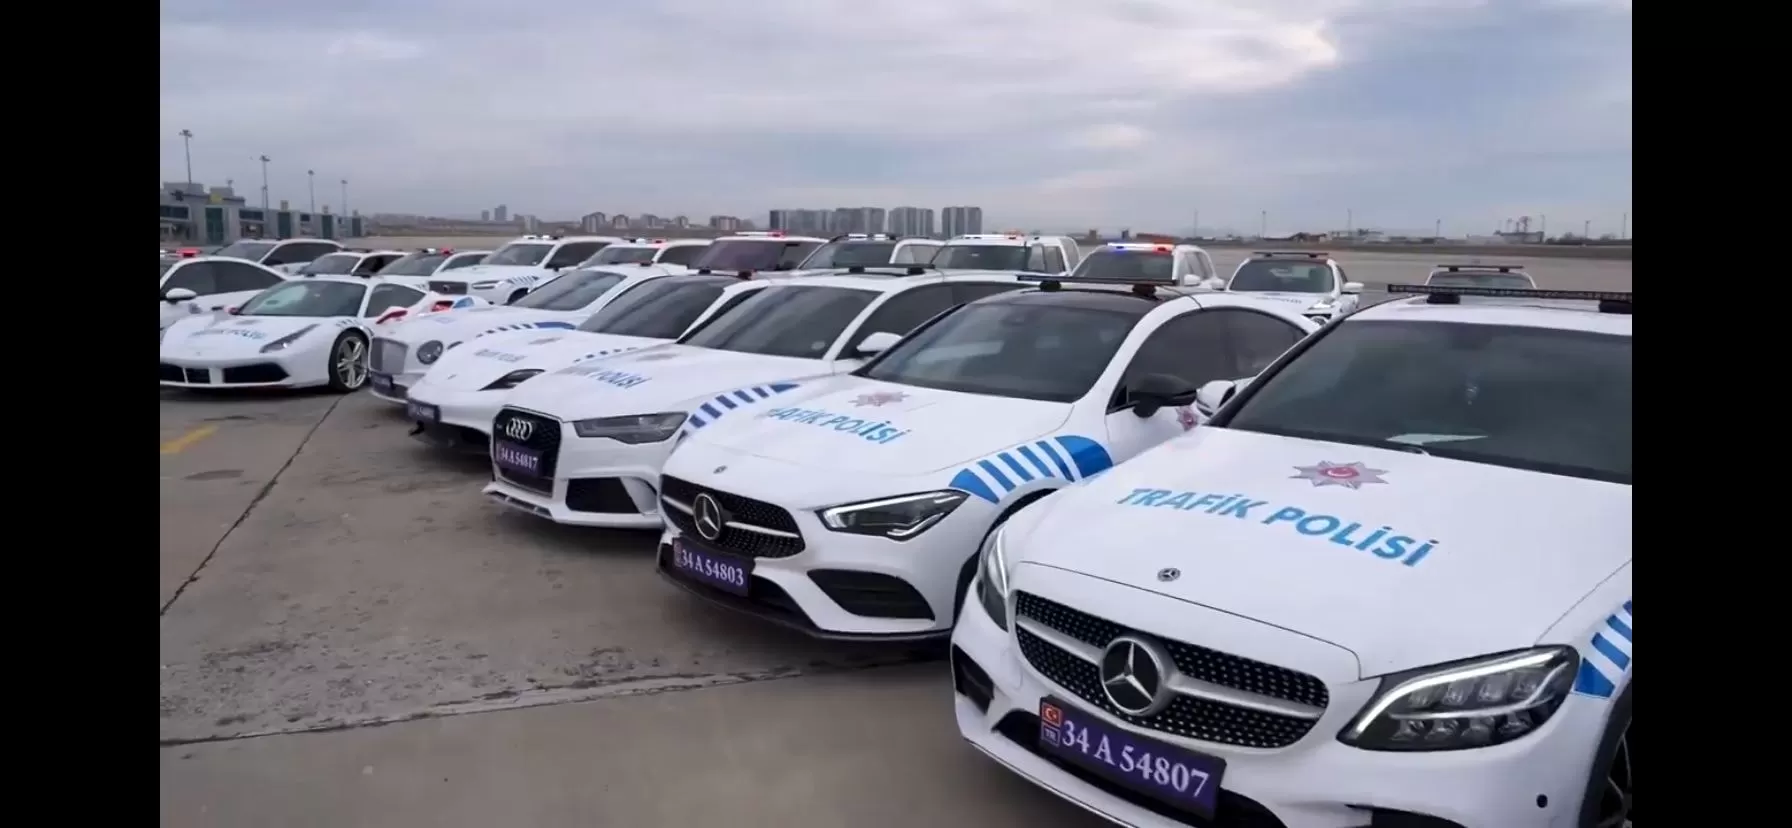 İstanbul Emniyet Müdürlüğü'nün organize suç örgütlerine yönelik operasyonlarında ele geçirilen 23 lüks araç, mahkeme kararıyla emniyete verildi. 